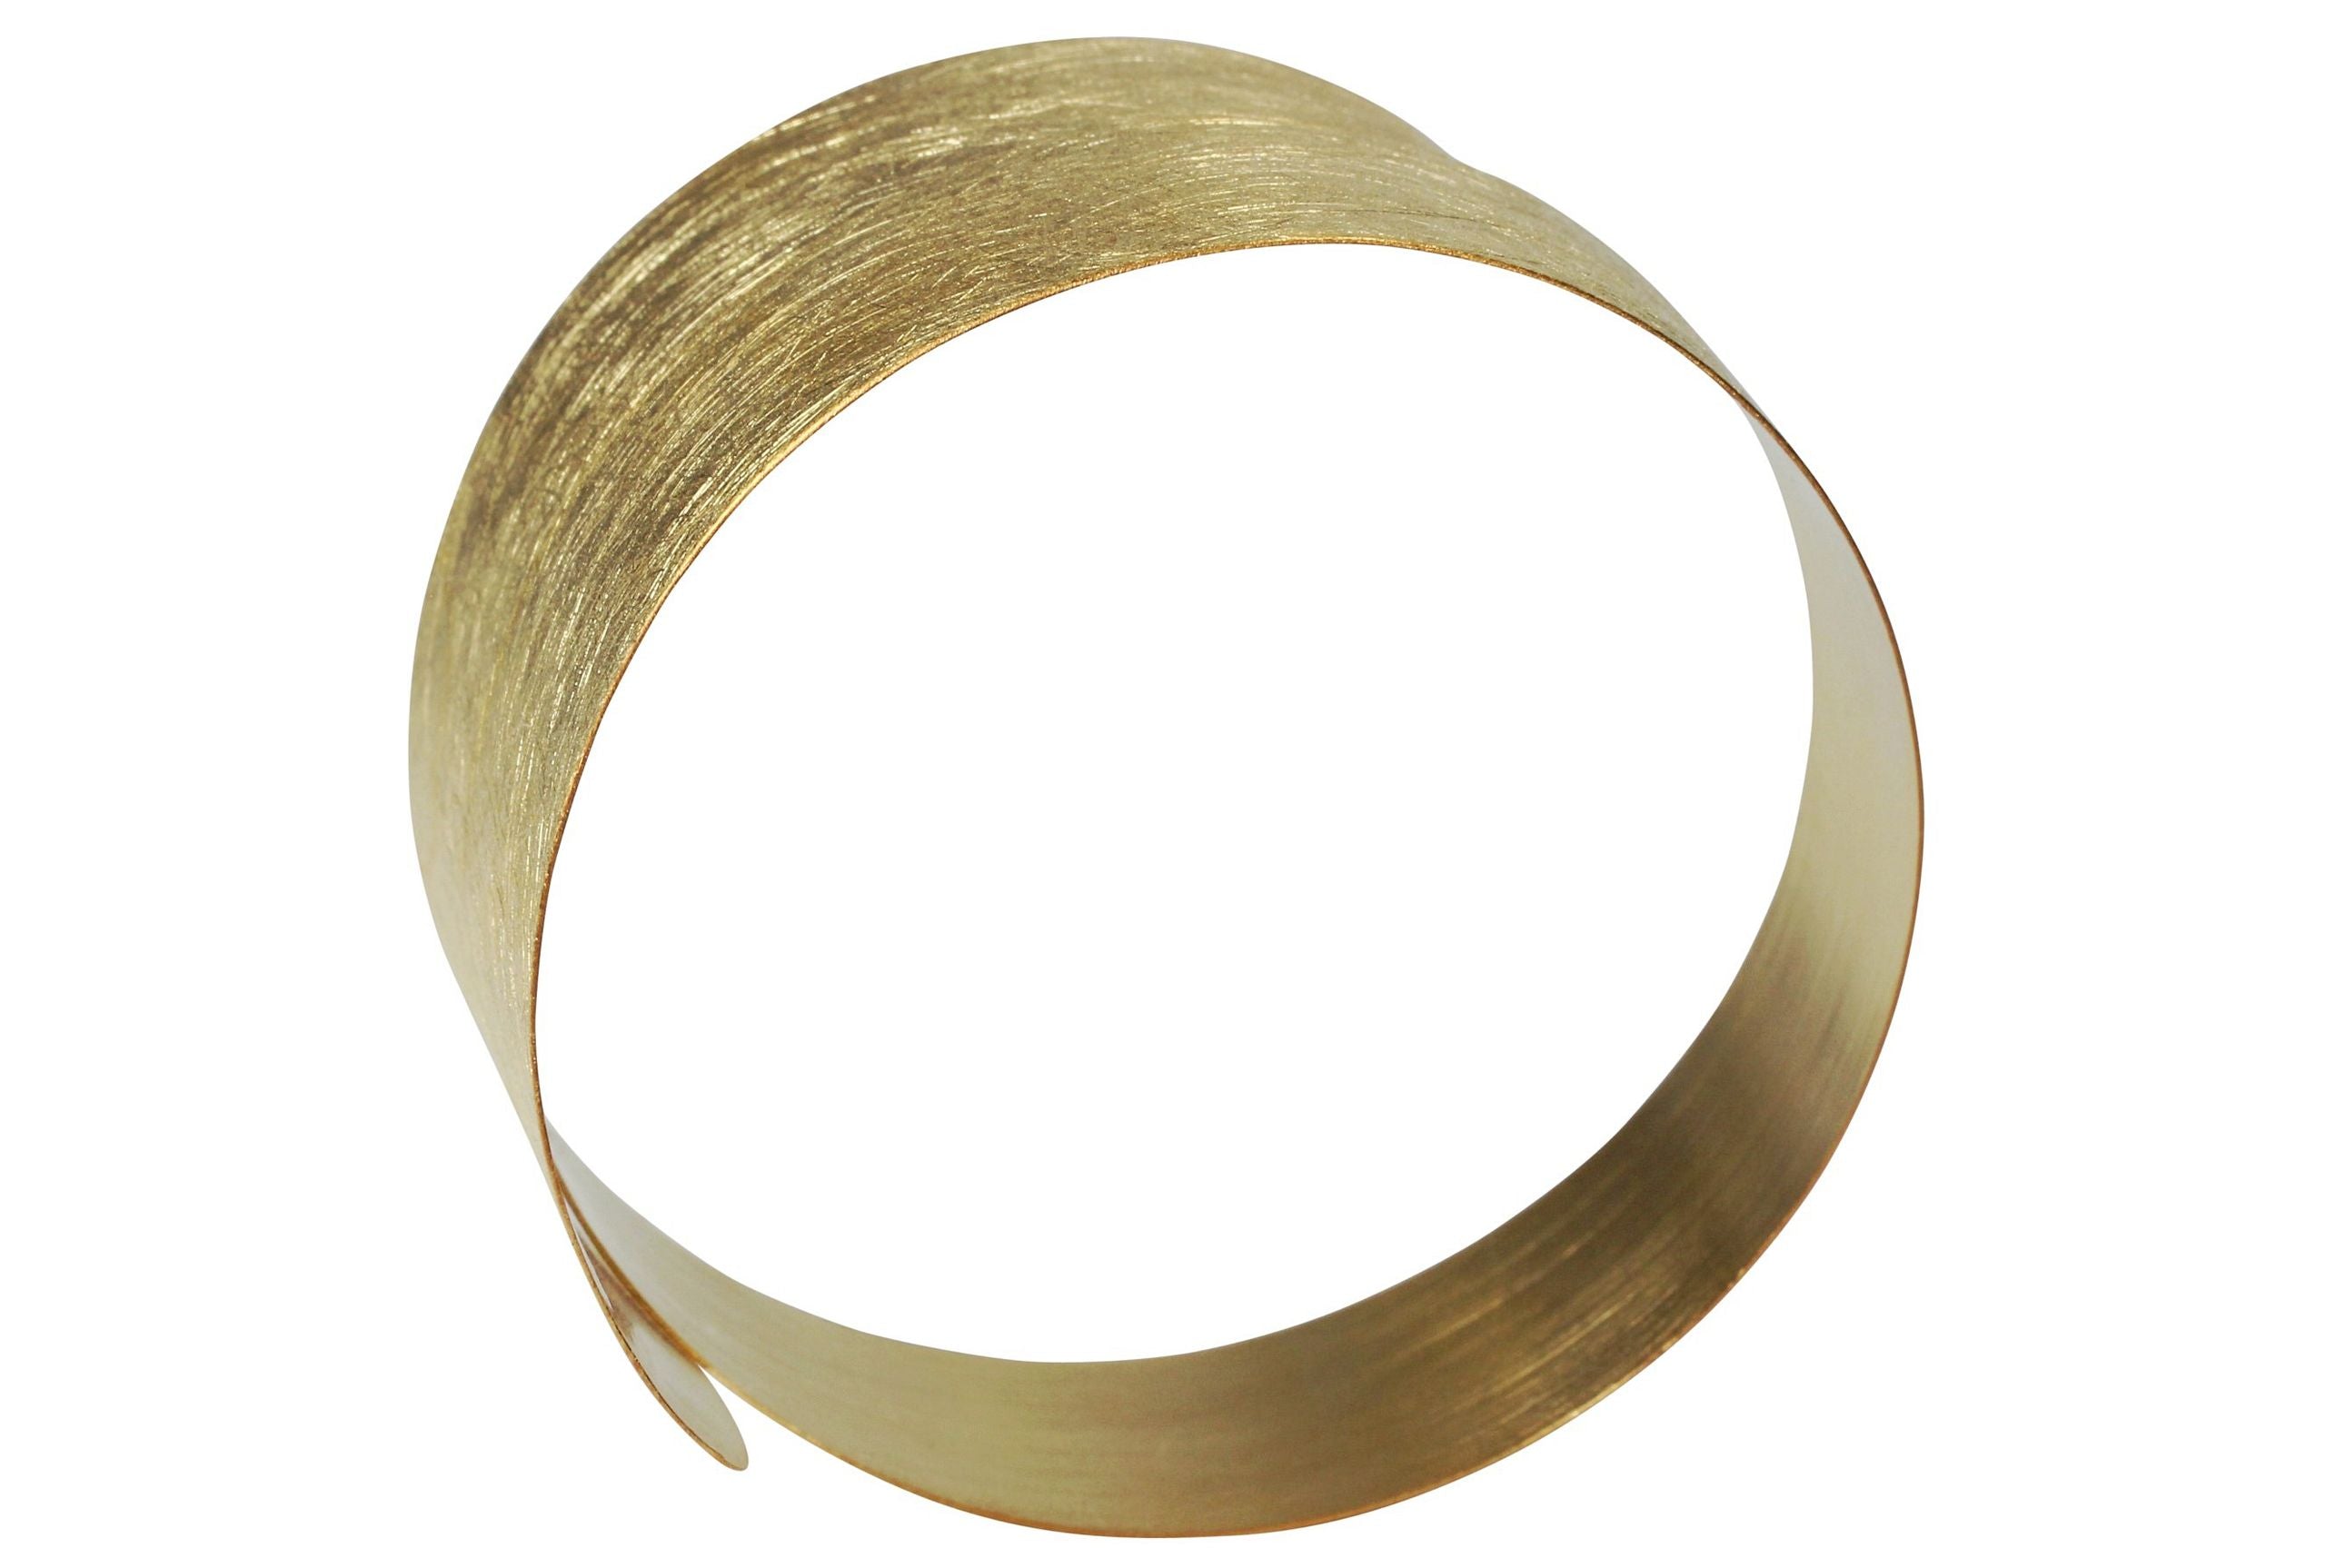 Armreif für Damen aus Silber mit vergoldeter Oberfläche. Der Armreif ist spiralförmig und flexibel.